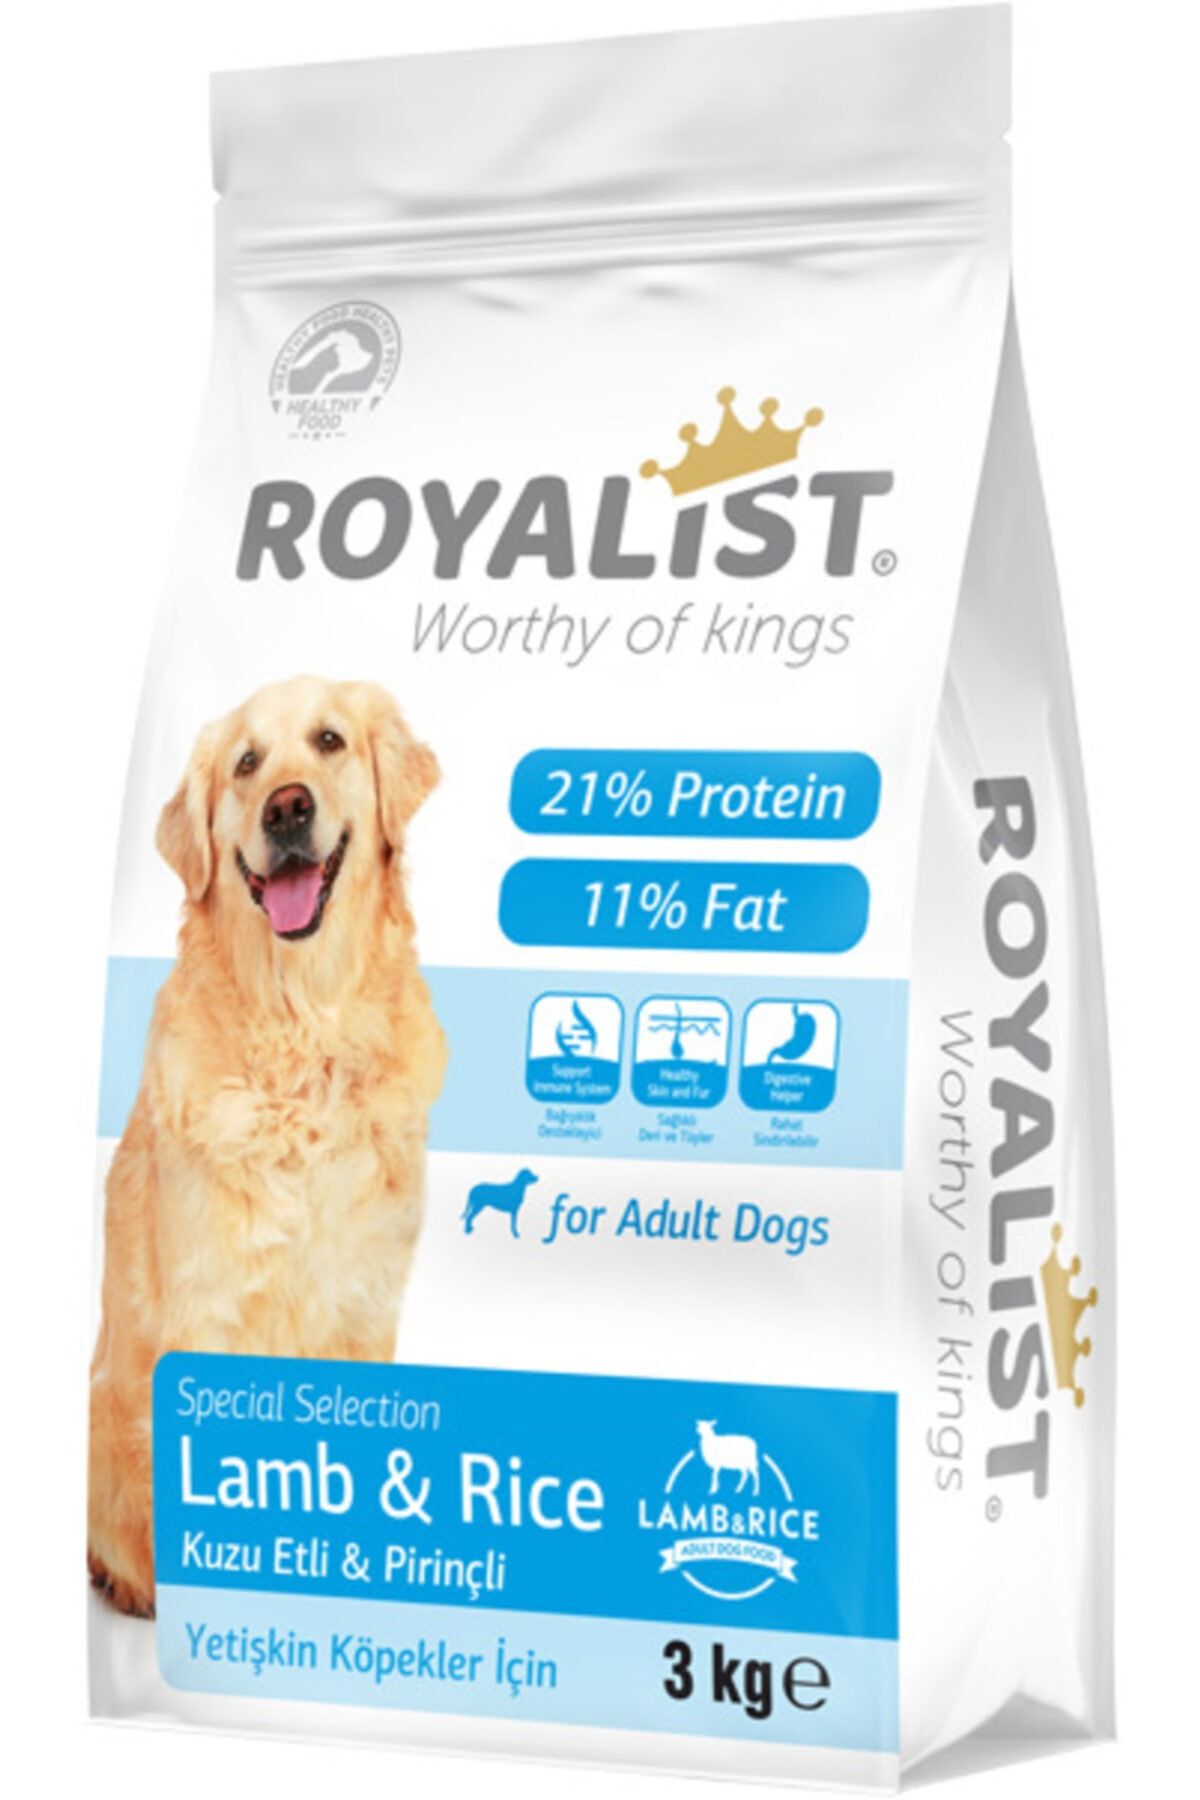 Royalist Kopek Mamasi Royalist Dog Lamb Rice 3 Kg Fiyati Yorumlari Trendyol